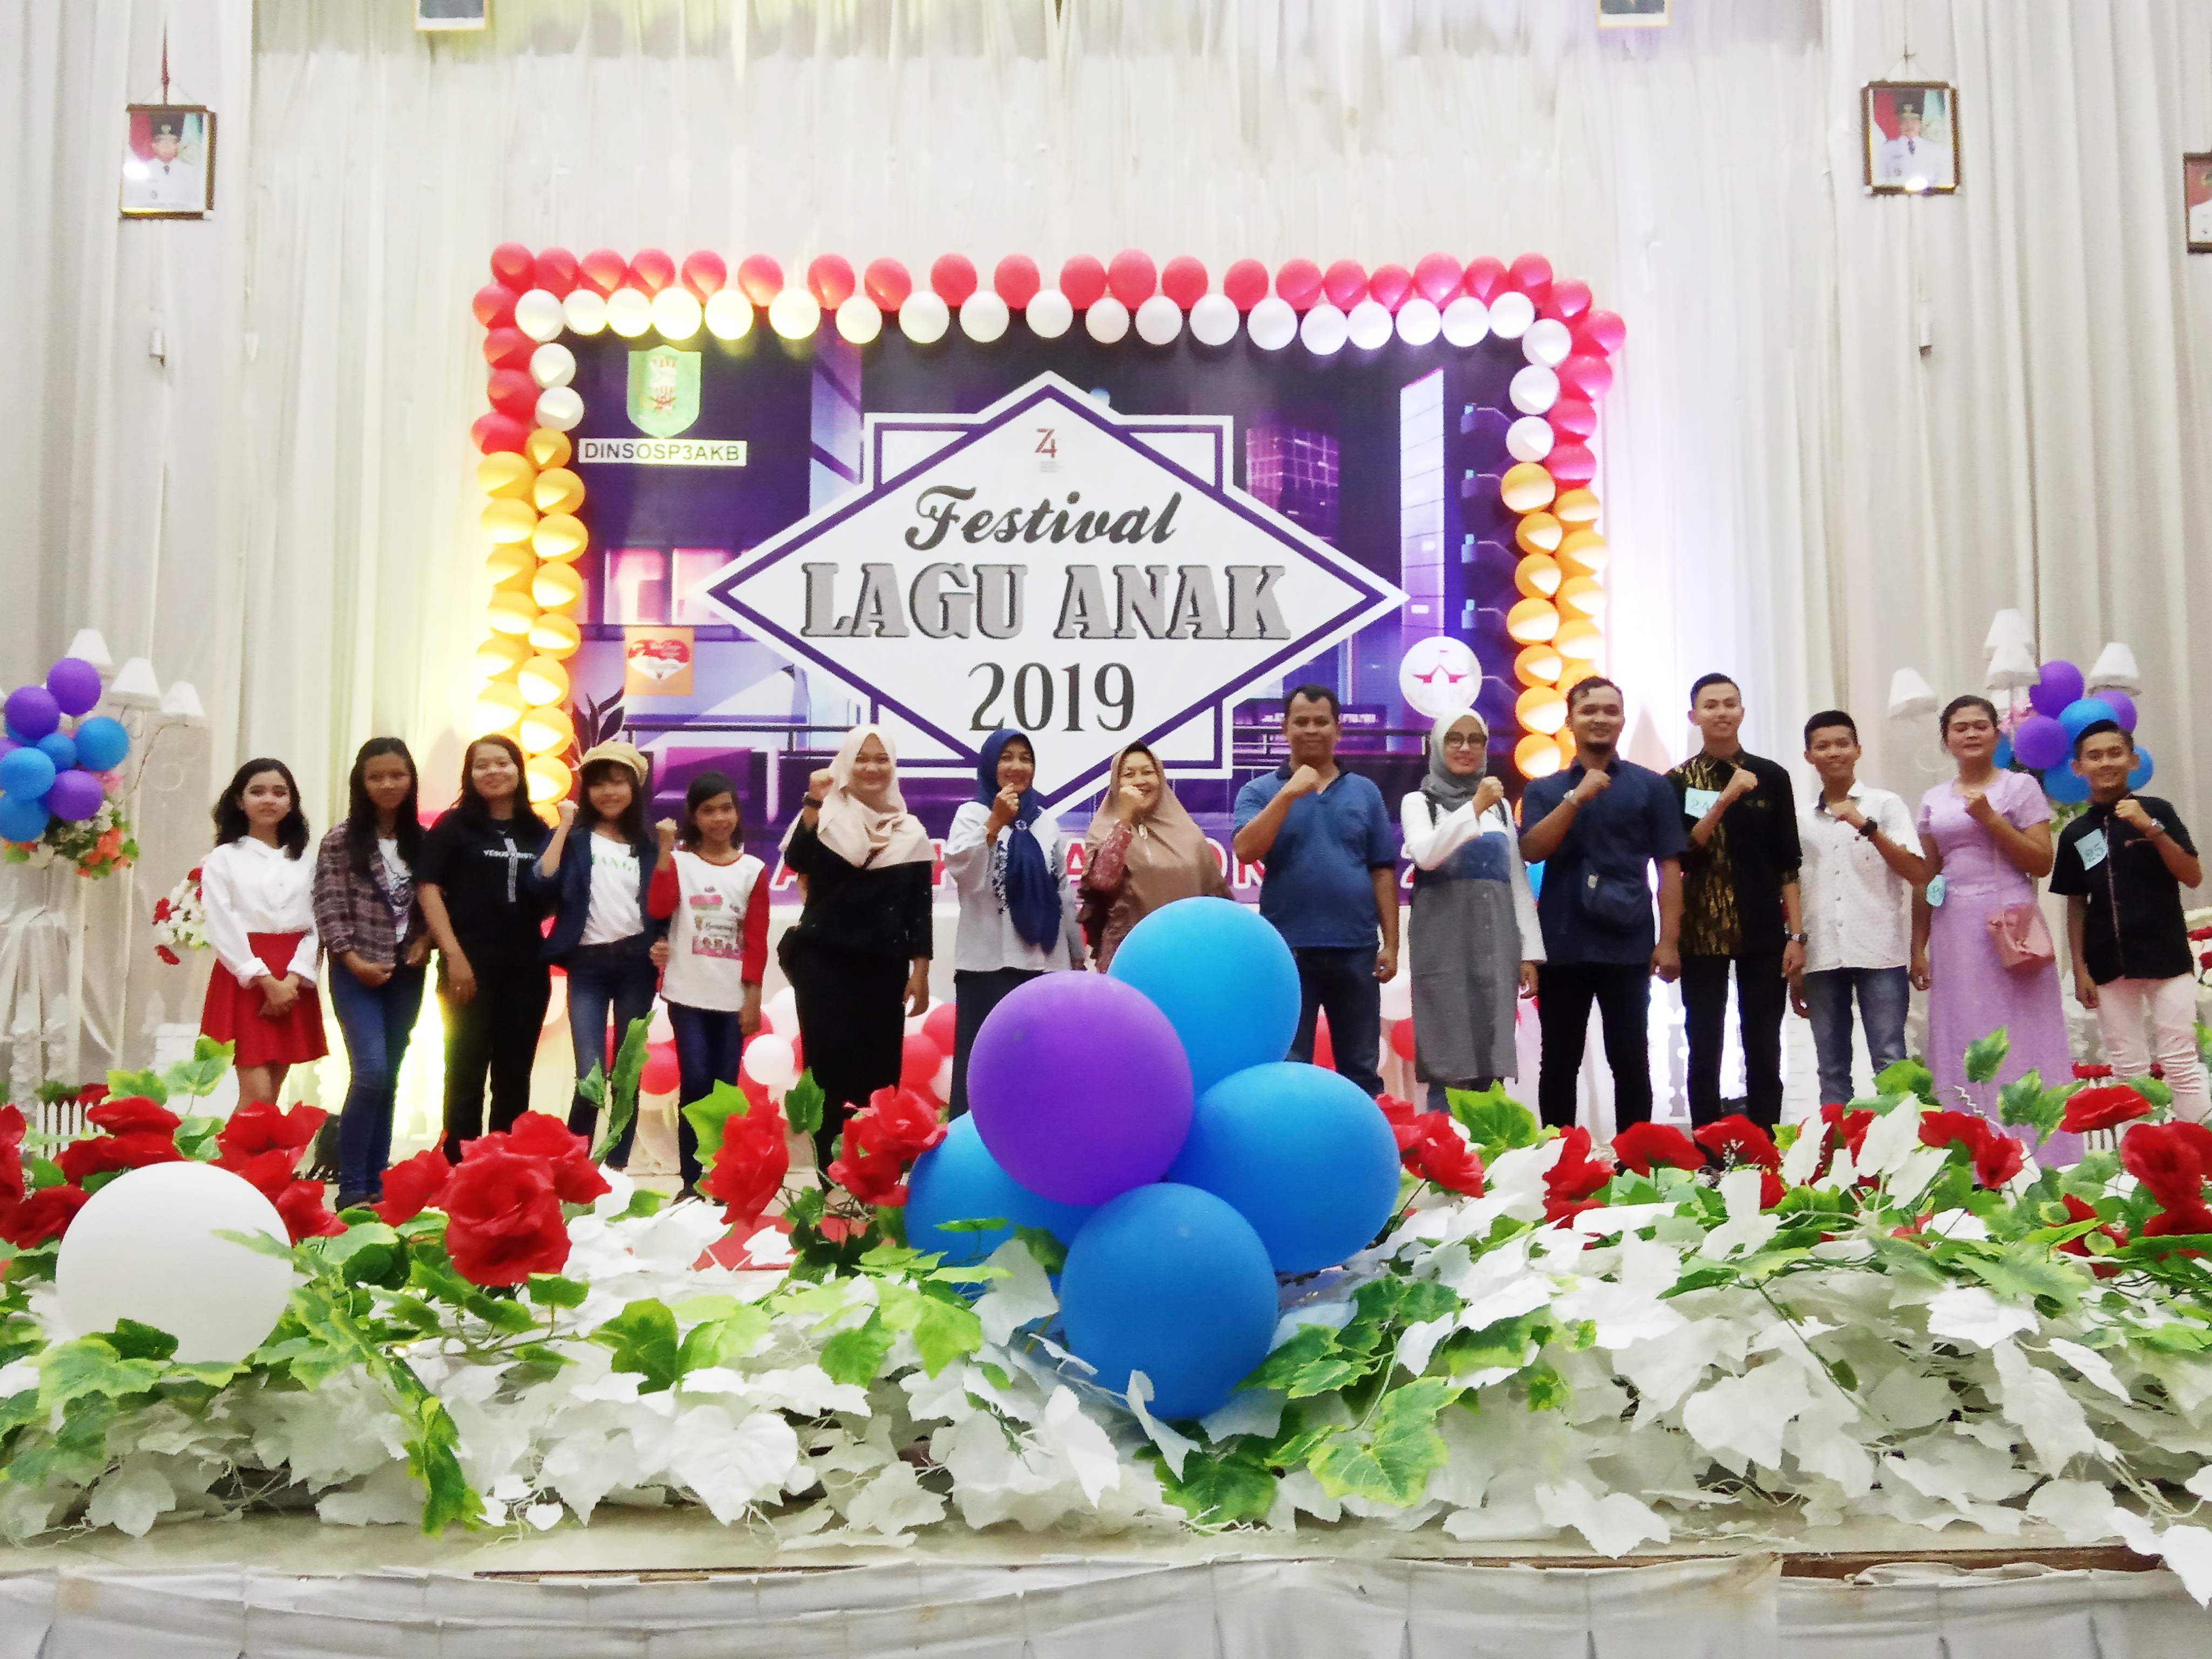 Lestarikan Lagu Anak, Dinsosp3akab Sanggau Gelar Festival Lagu Anak Pada Peringatan HAN 2019 dan Harganas XXVI